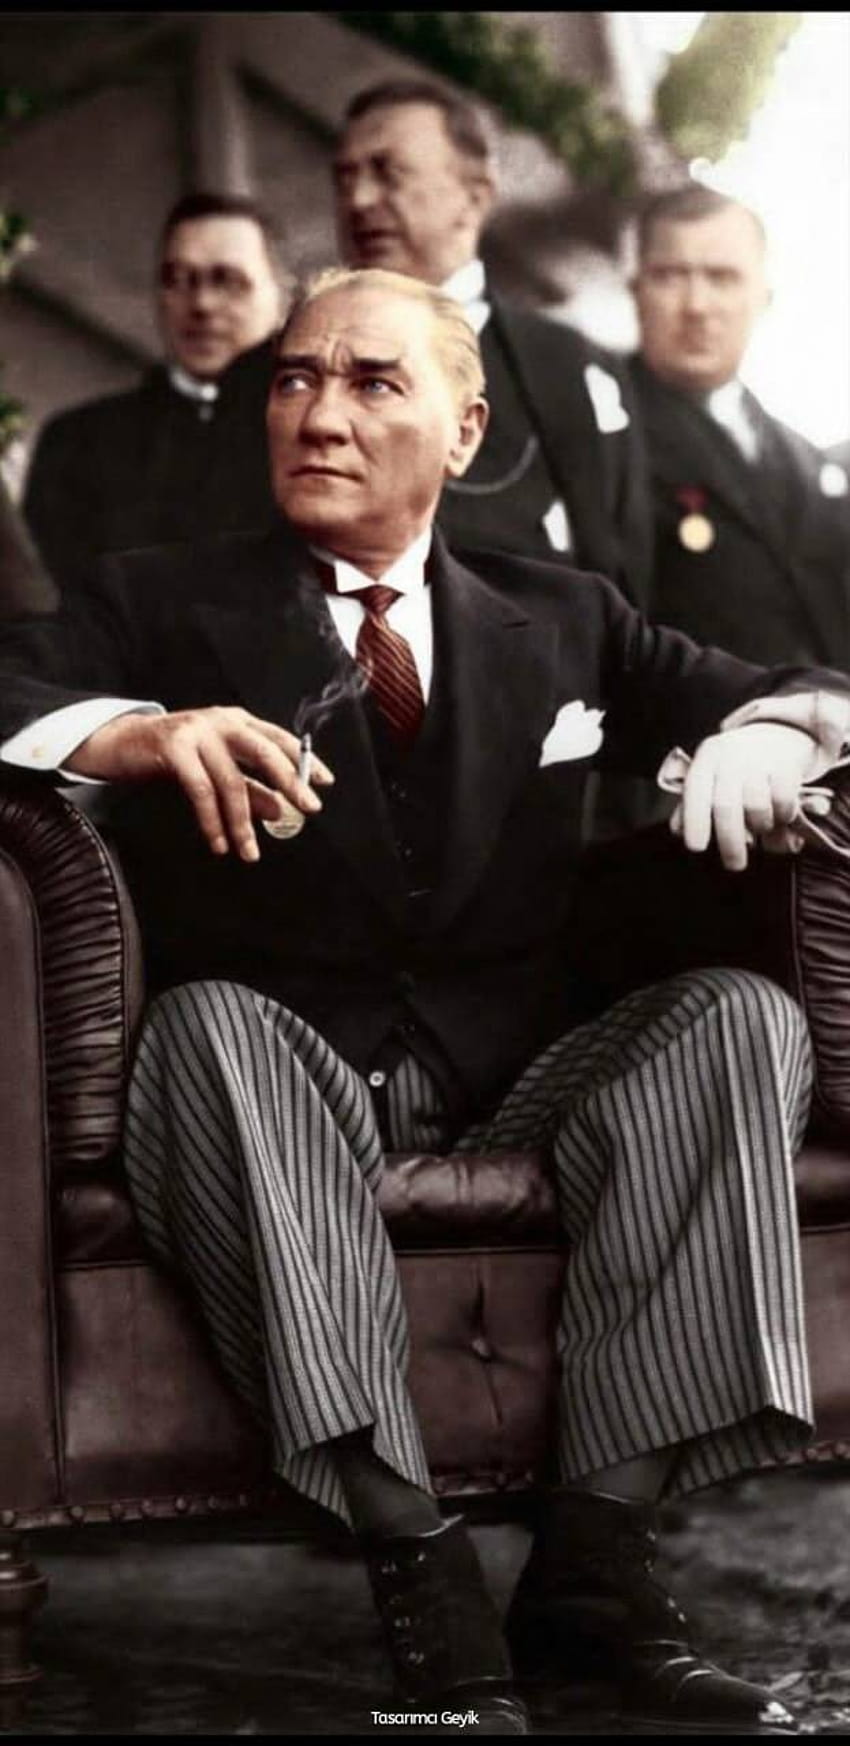 Ataturk by TasarimciGeyik, ataturk iphone HD phone wallpaper